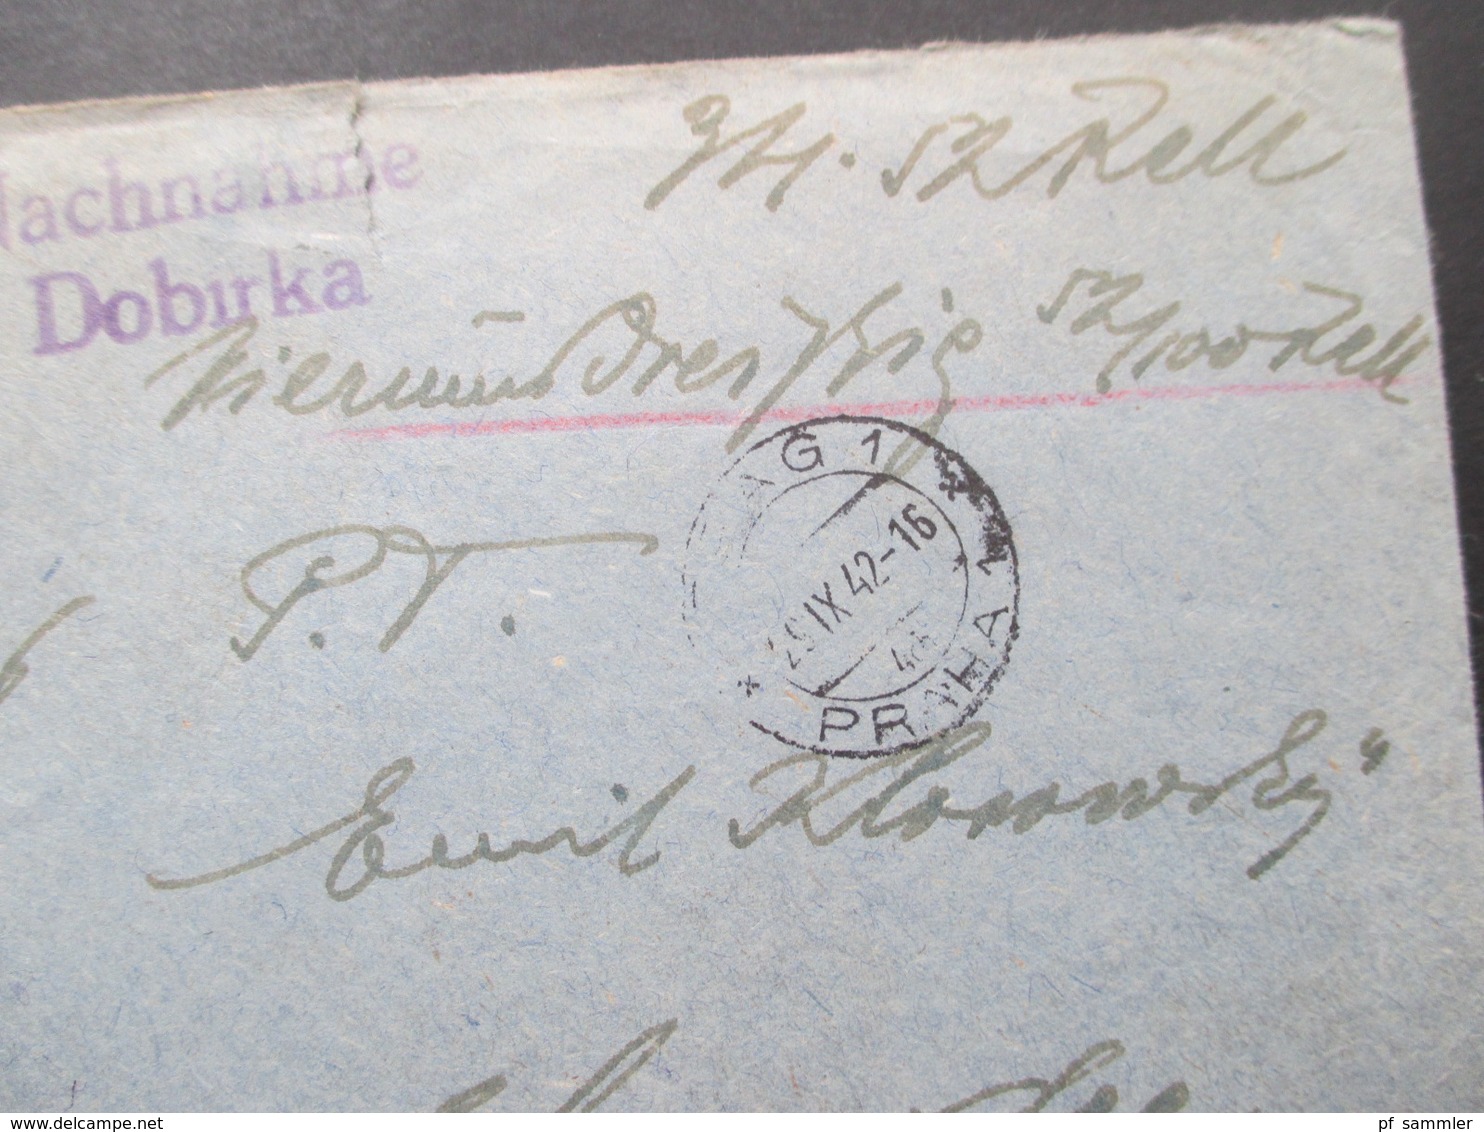 Böhmen Und Mähren 1942 Postamt Prag 1 Nachnahme Dobirka Einschreiben Postsache Nach Hahnenklee Im Harz - Storia Postale